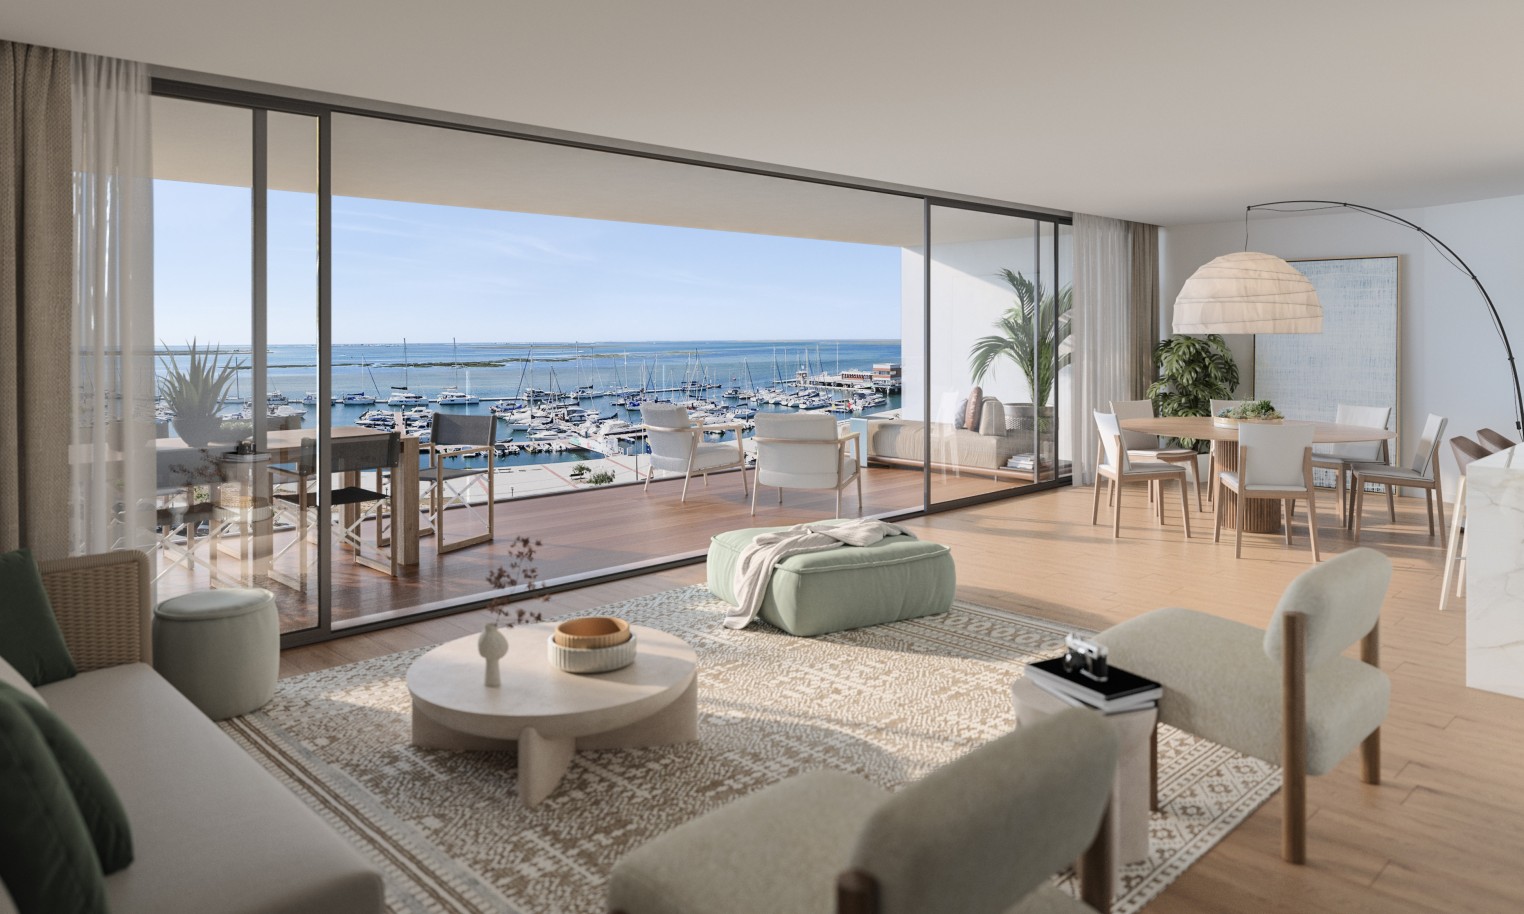 Appartements neufs avec vue sur mer, 1, 2 & 3 chambres, à vendre à Olhão, Algarve_244036